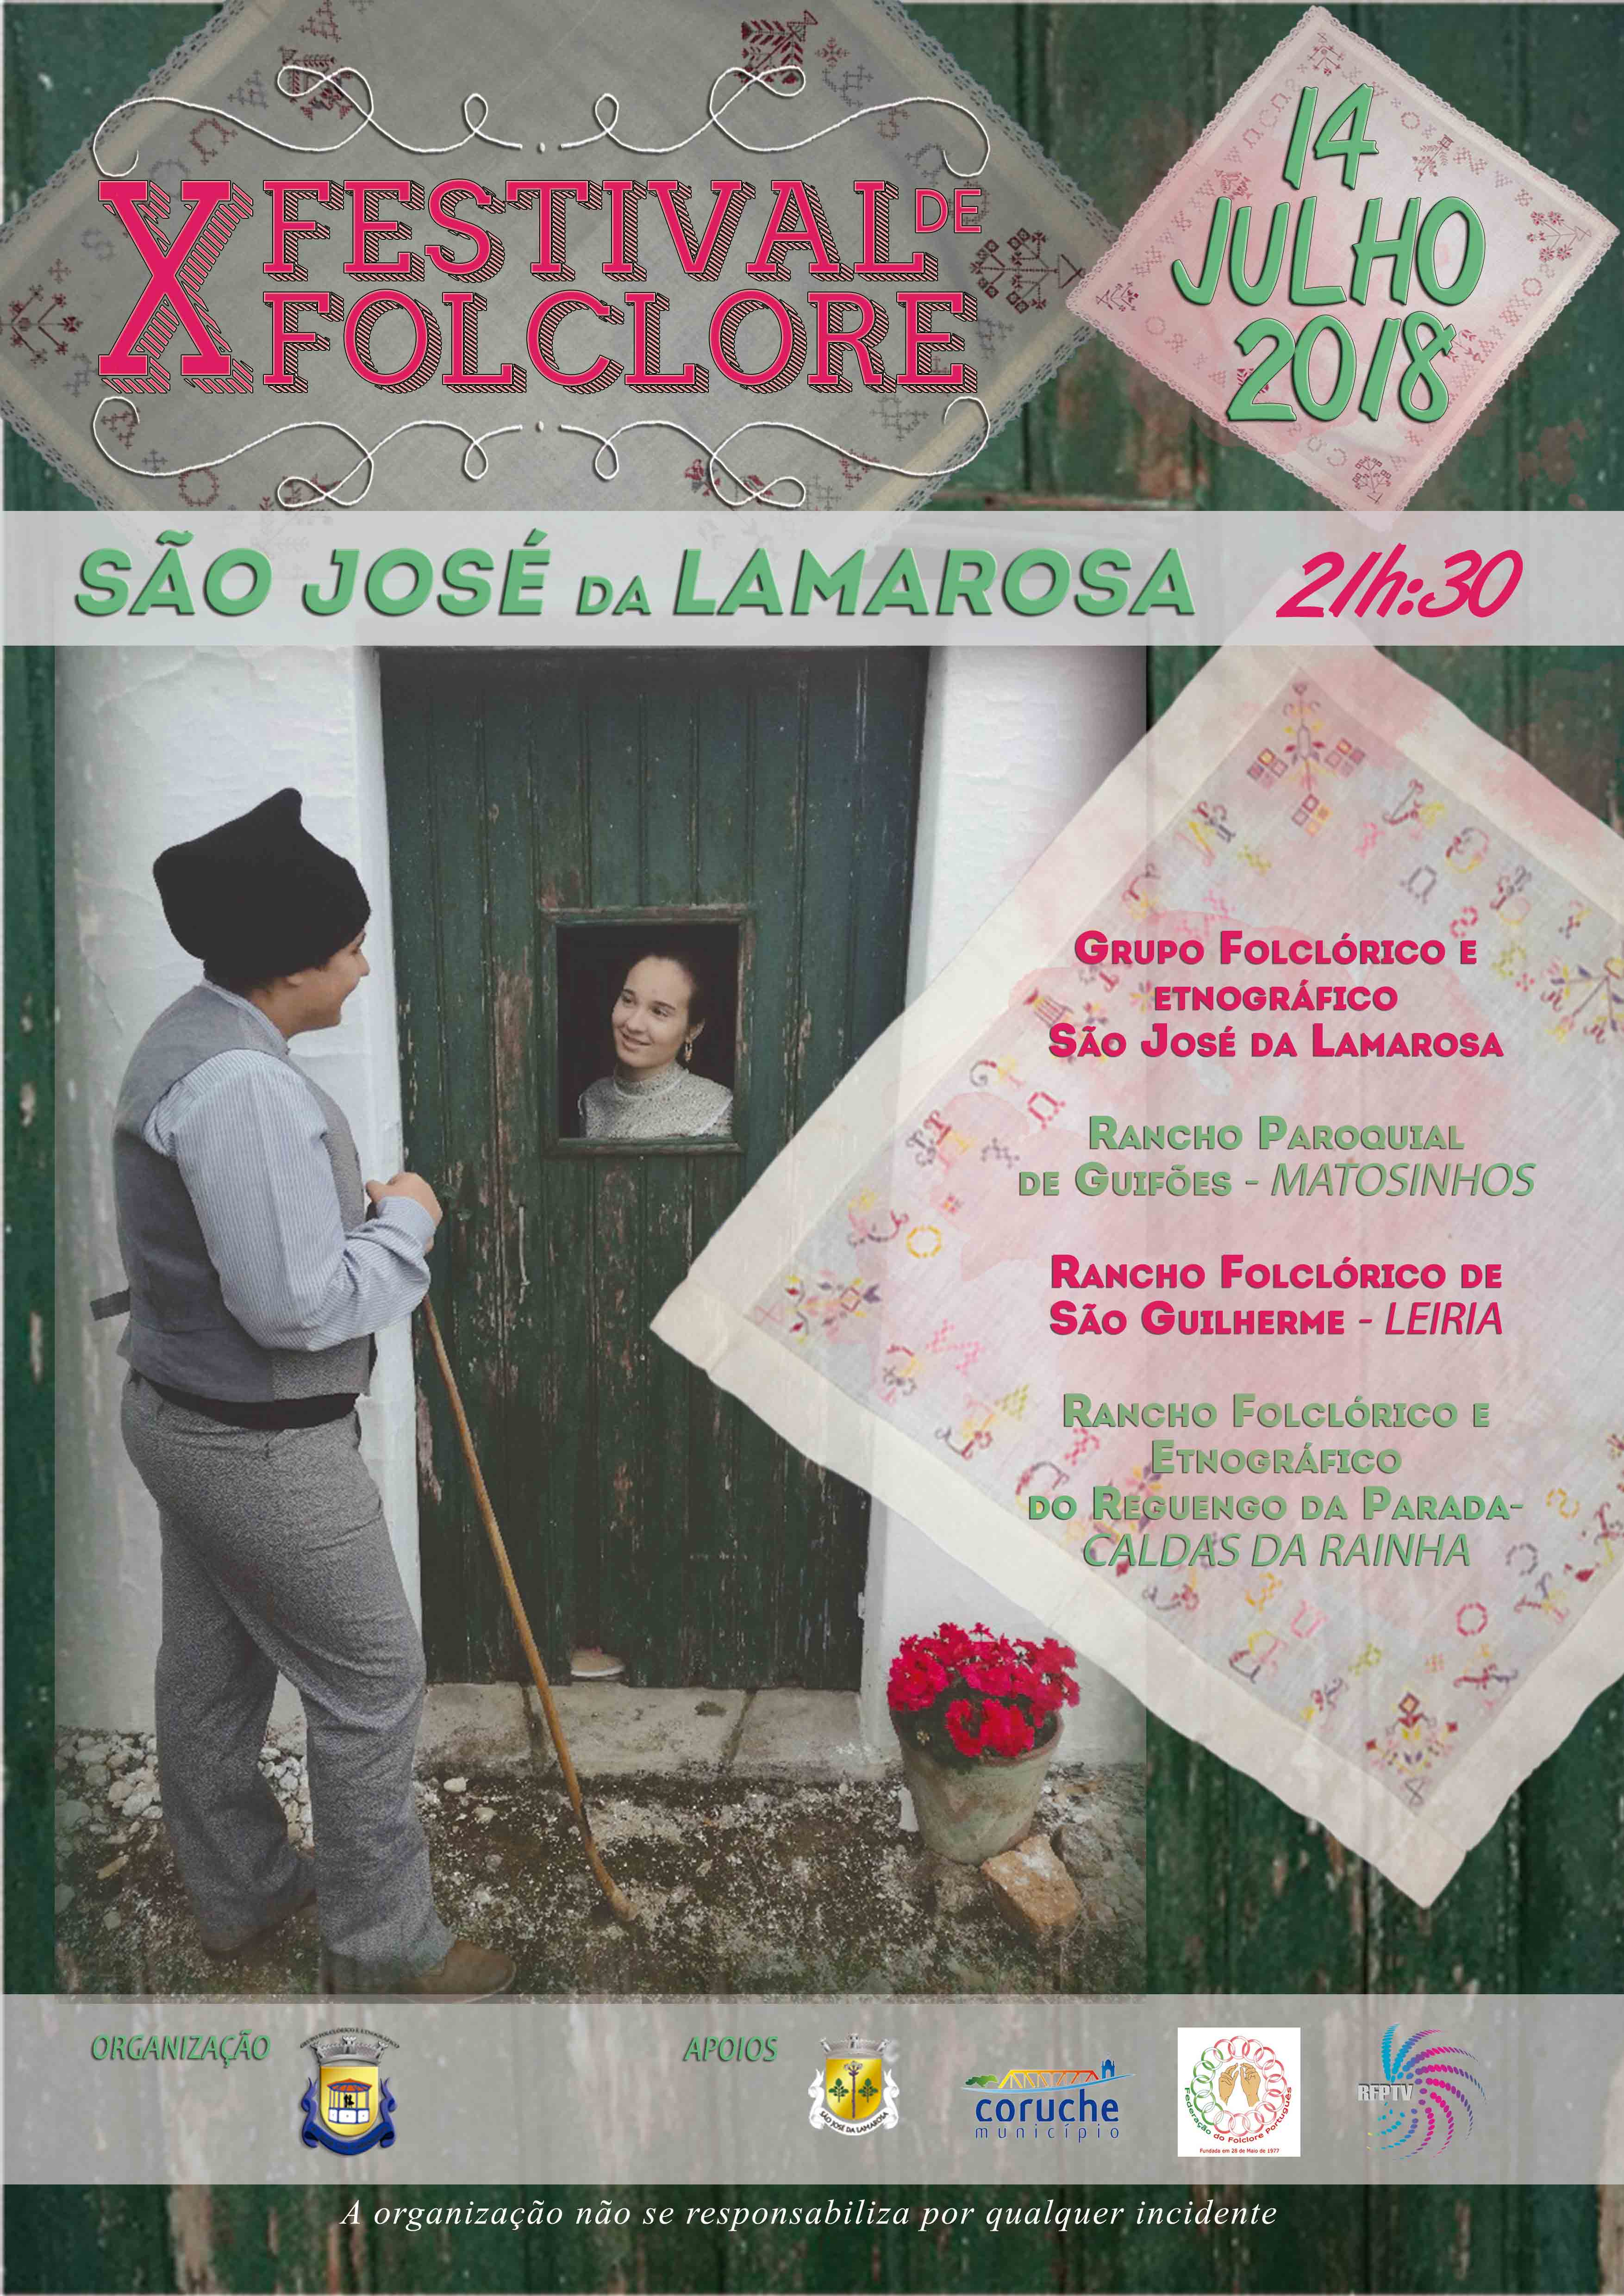 X Festival de Folclore – Grupo Folclórico e Etnográfico de São José da Lamarosa